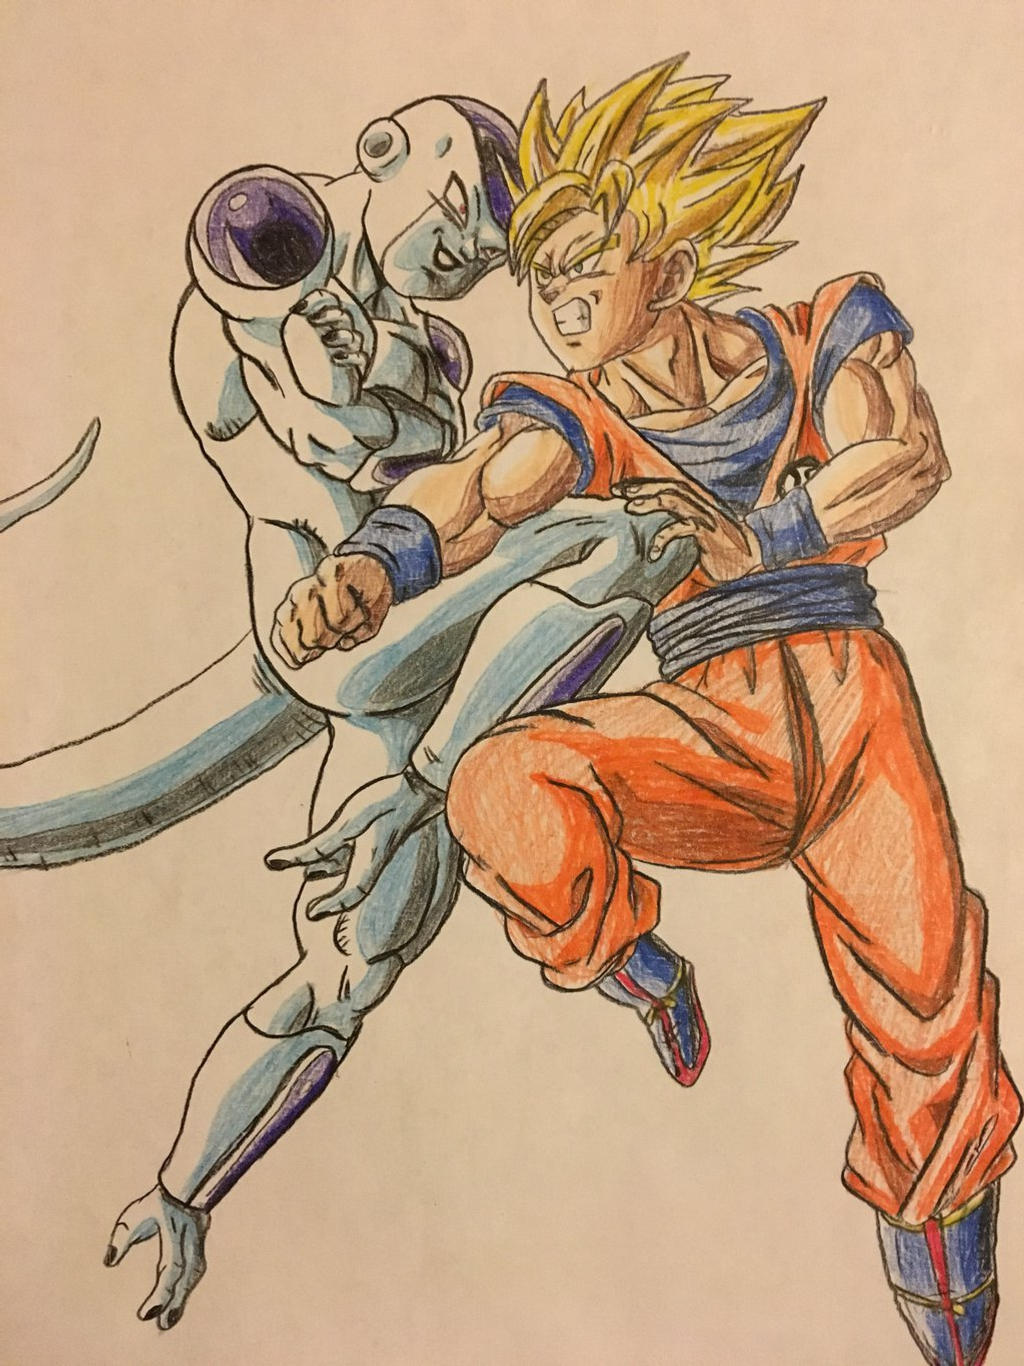 Goku vs Frieza (part 1) by InabiUchiha98 on DeviantArt